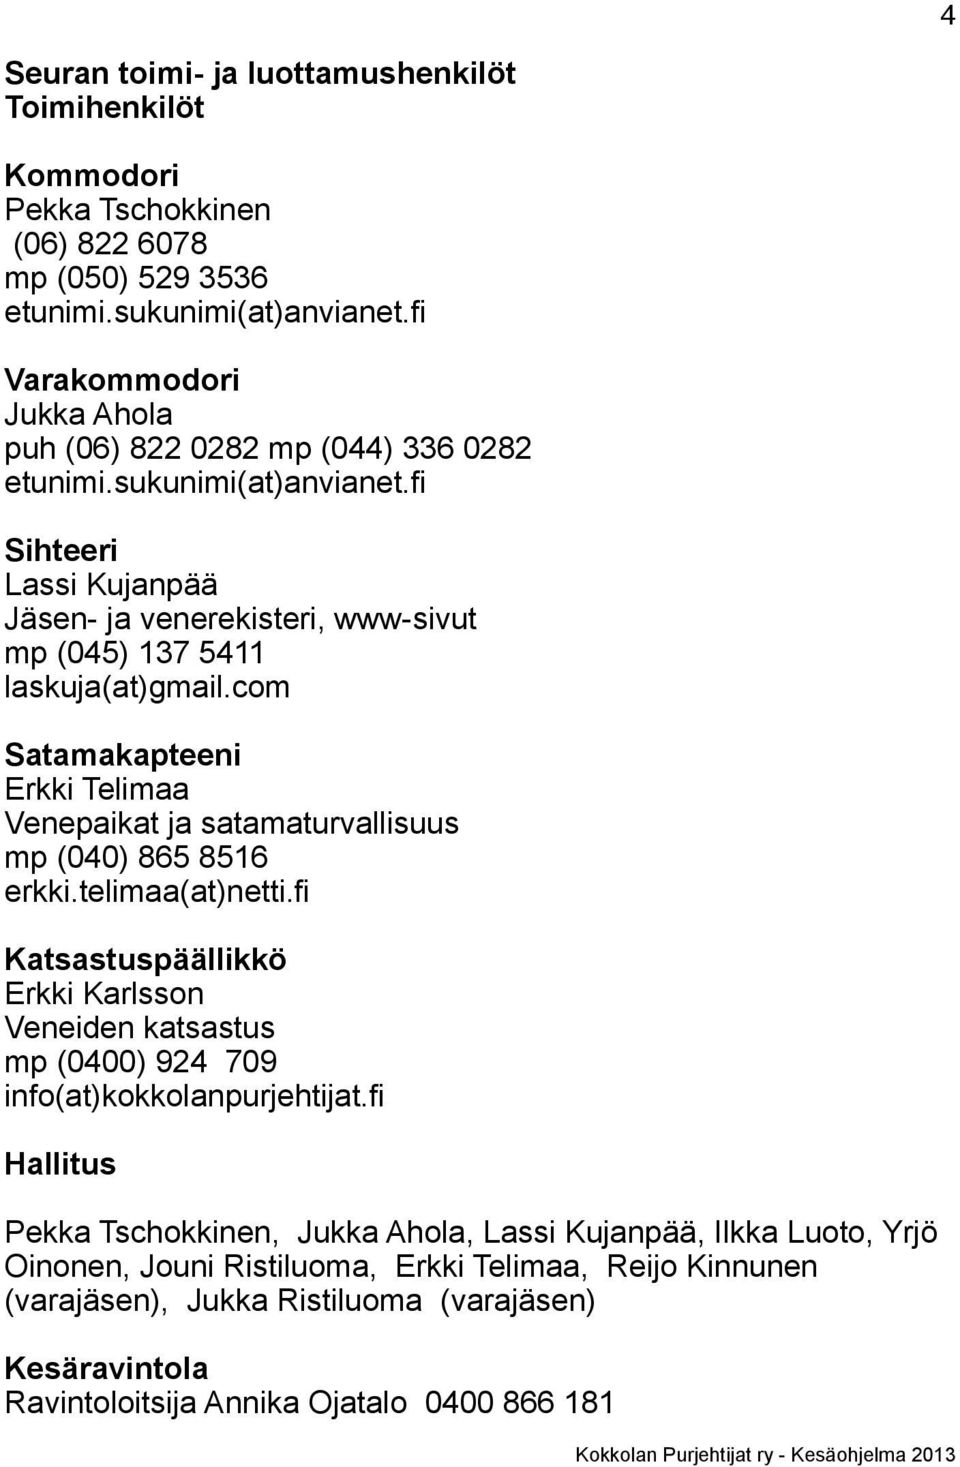 com Satamakapteeni Erkki Telimaa Venepaikat ja satamaturvallisuus mp (040) 865 8516 erkki.telimaa(at)netti.